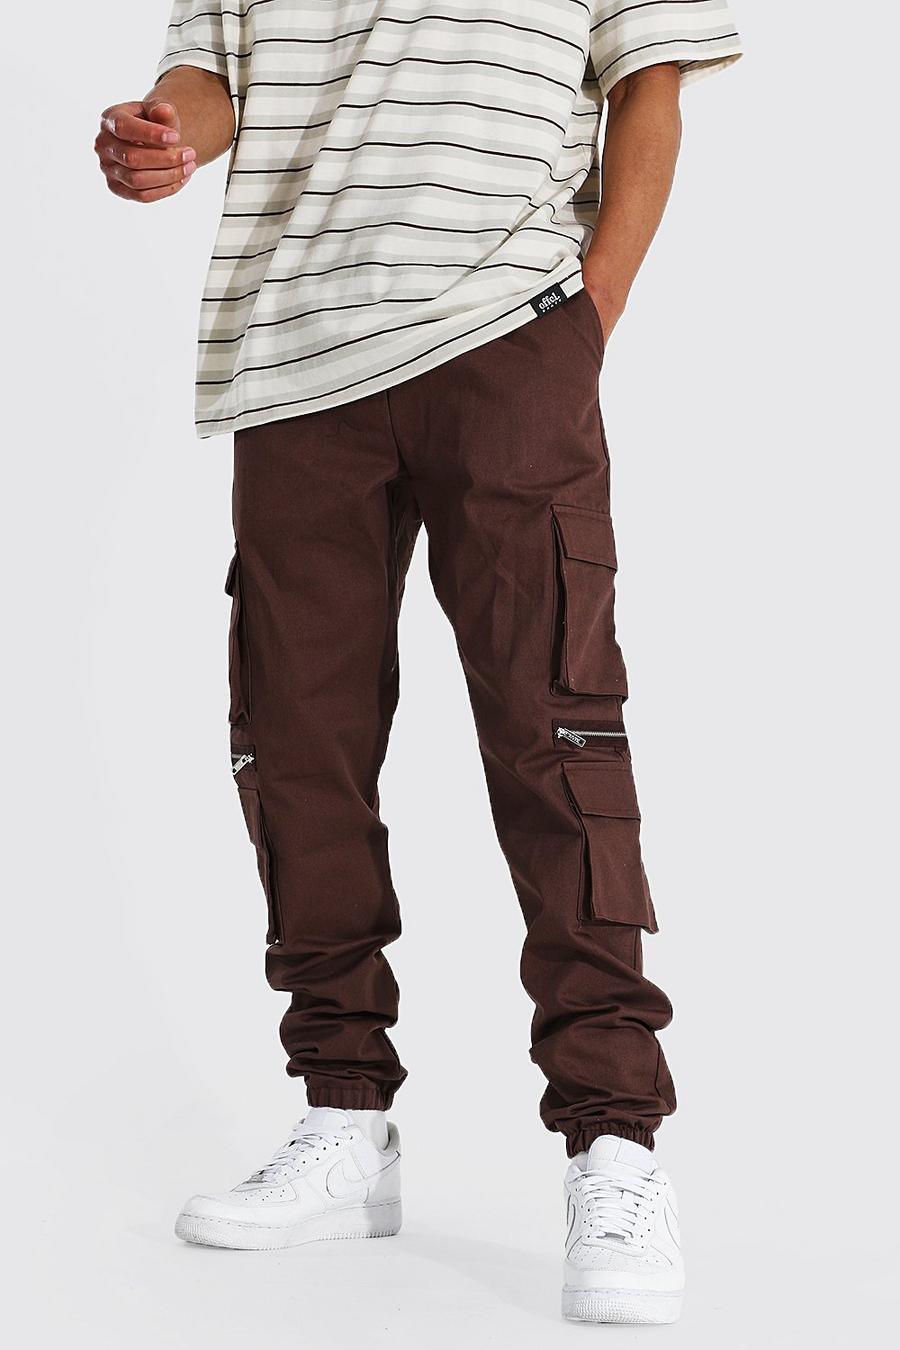 Pantaloncini tuta Cargo Tall Man in twill con tasche e zip, Chocolate marrone